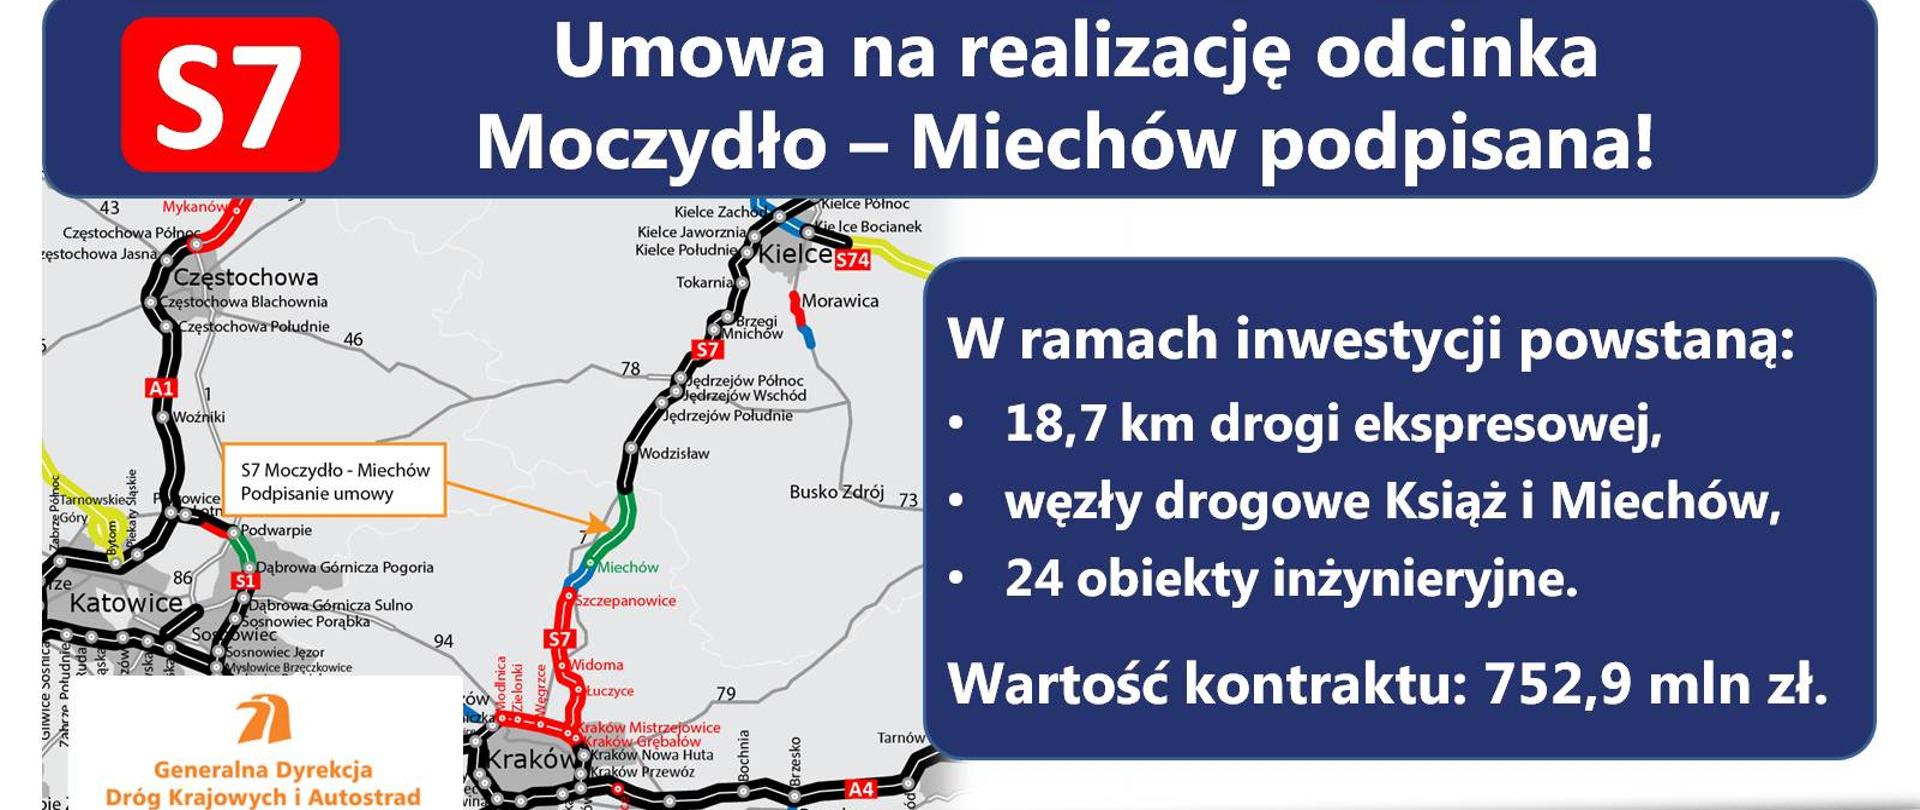 Umowa na realizację S7 Moczydło-Miechów podpisana - infografika